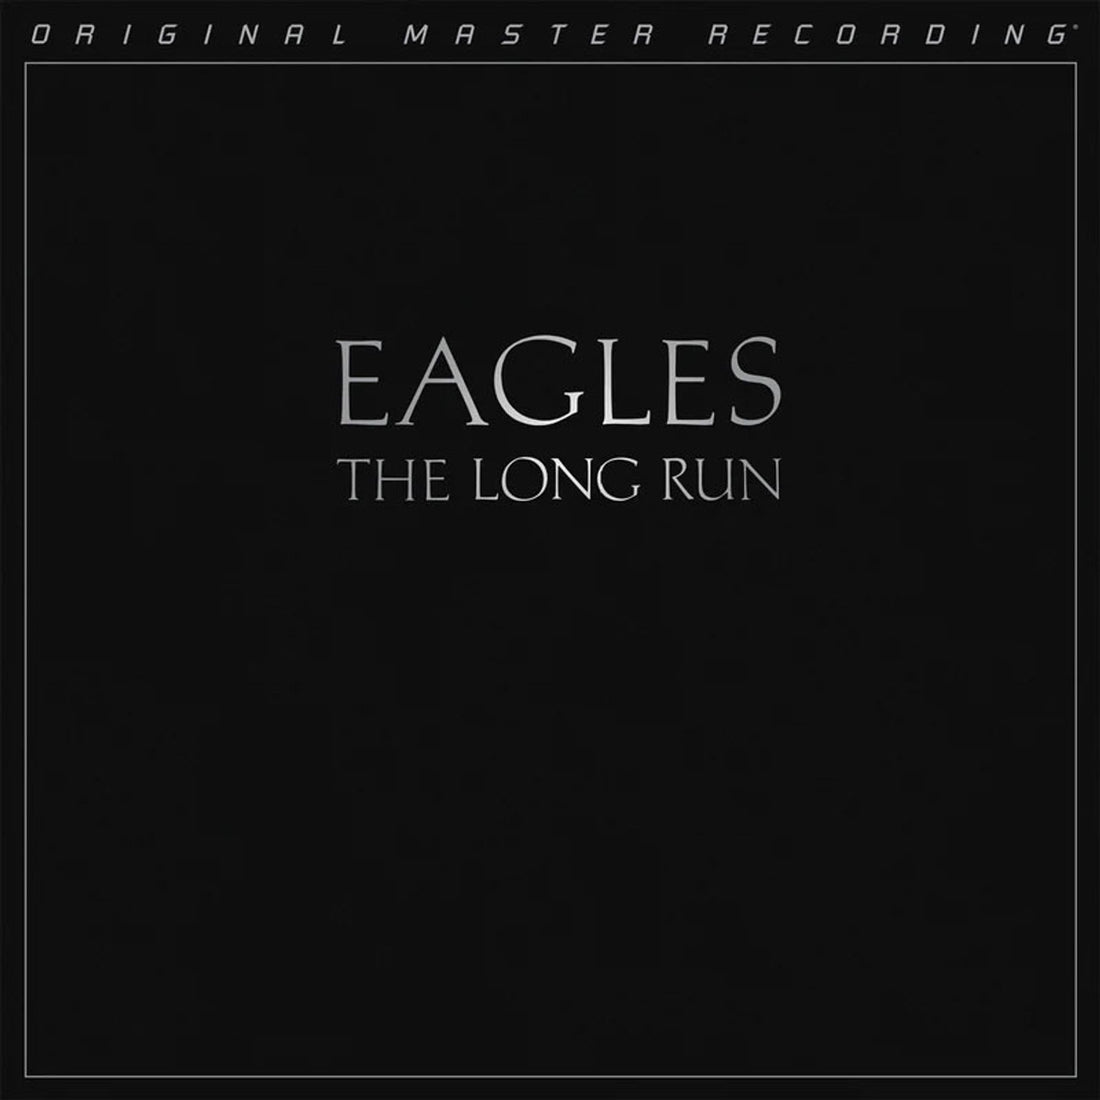 The Eagles | The Long Run [SACD]